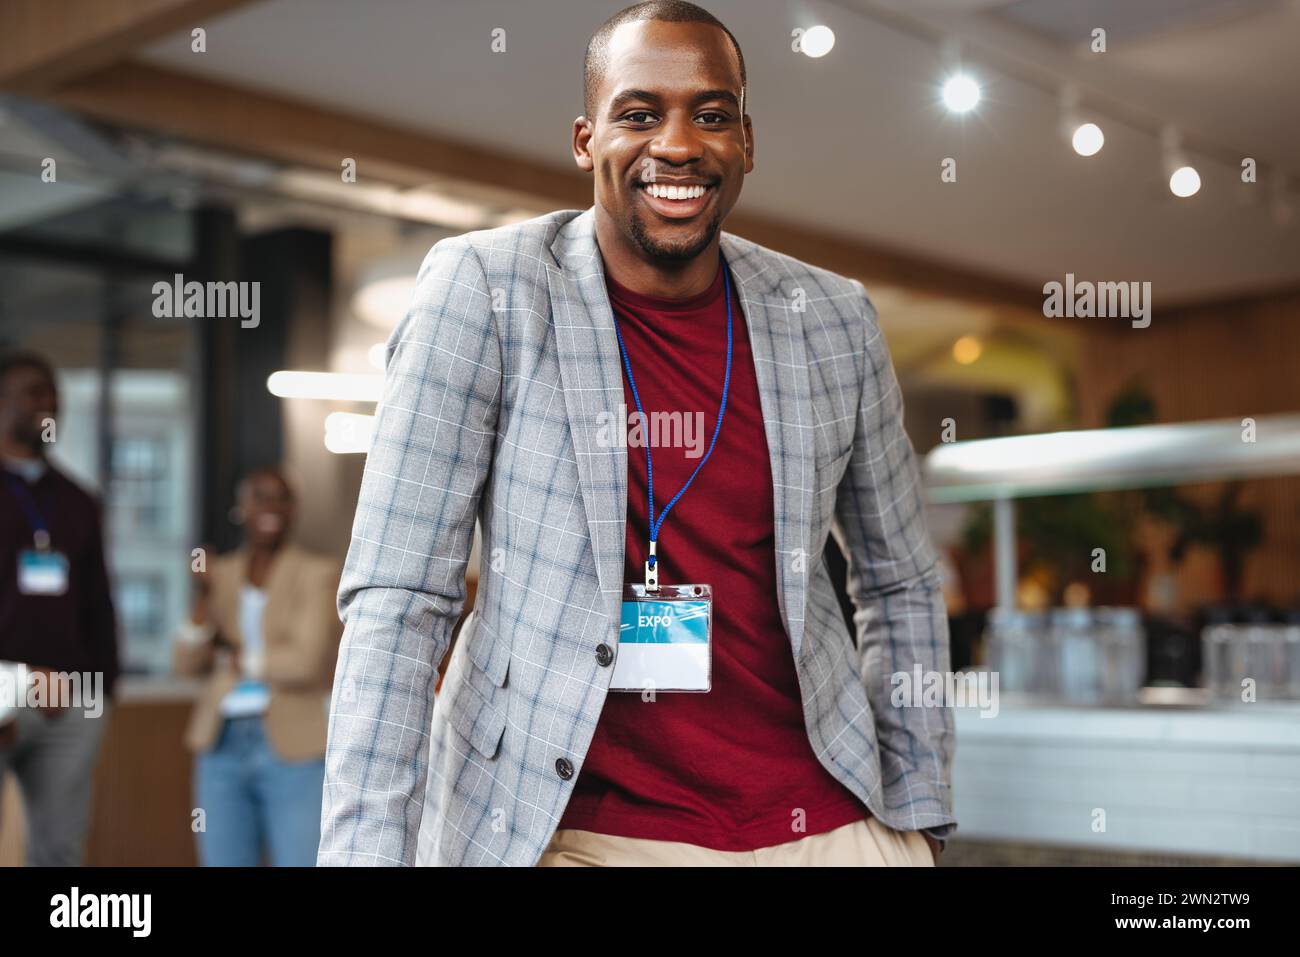 Ein erfolgreicher Geschäftsmann mit einem Abzeichen lächelt während eines Networking-Events. Die Büroumgebung mit Kollegen im Hintergrund spiegelt ein professionelles und wider Stockfoto